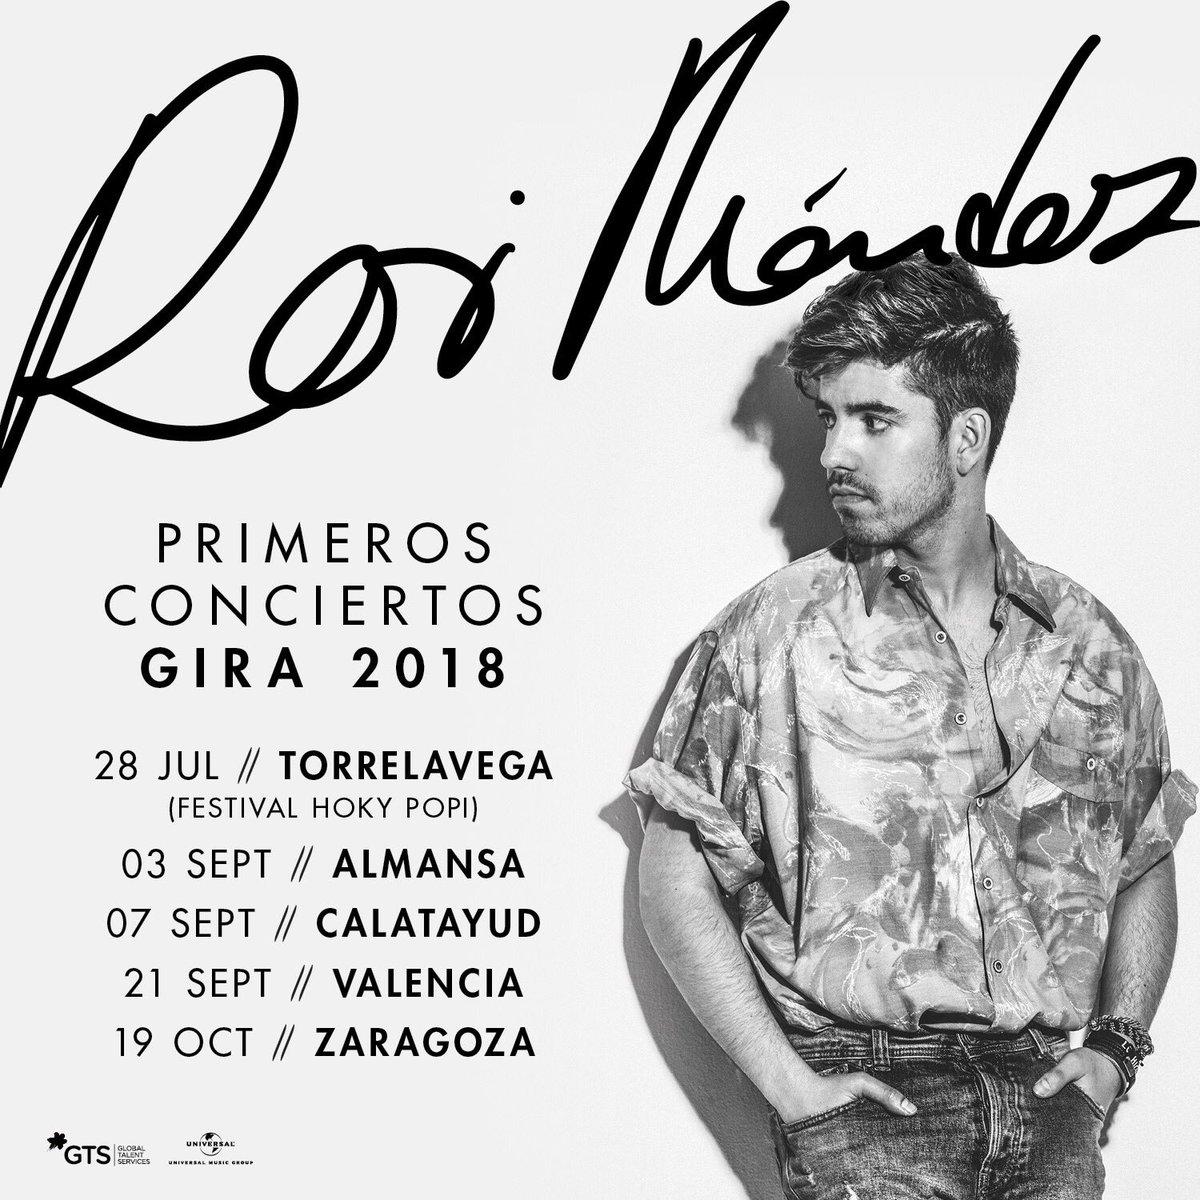 Roi, de OT elige la provincia de Albacete para uno de sus primeros conciertos